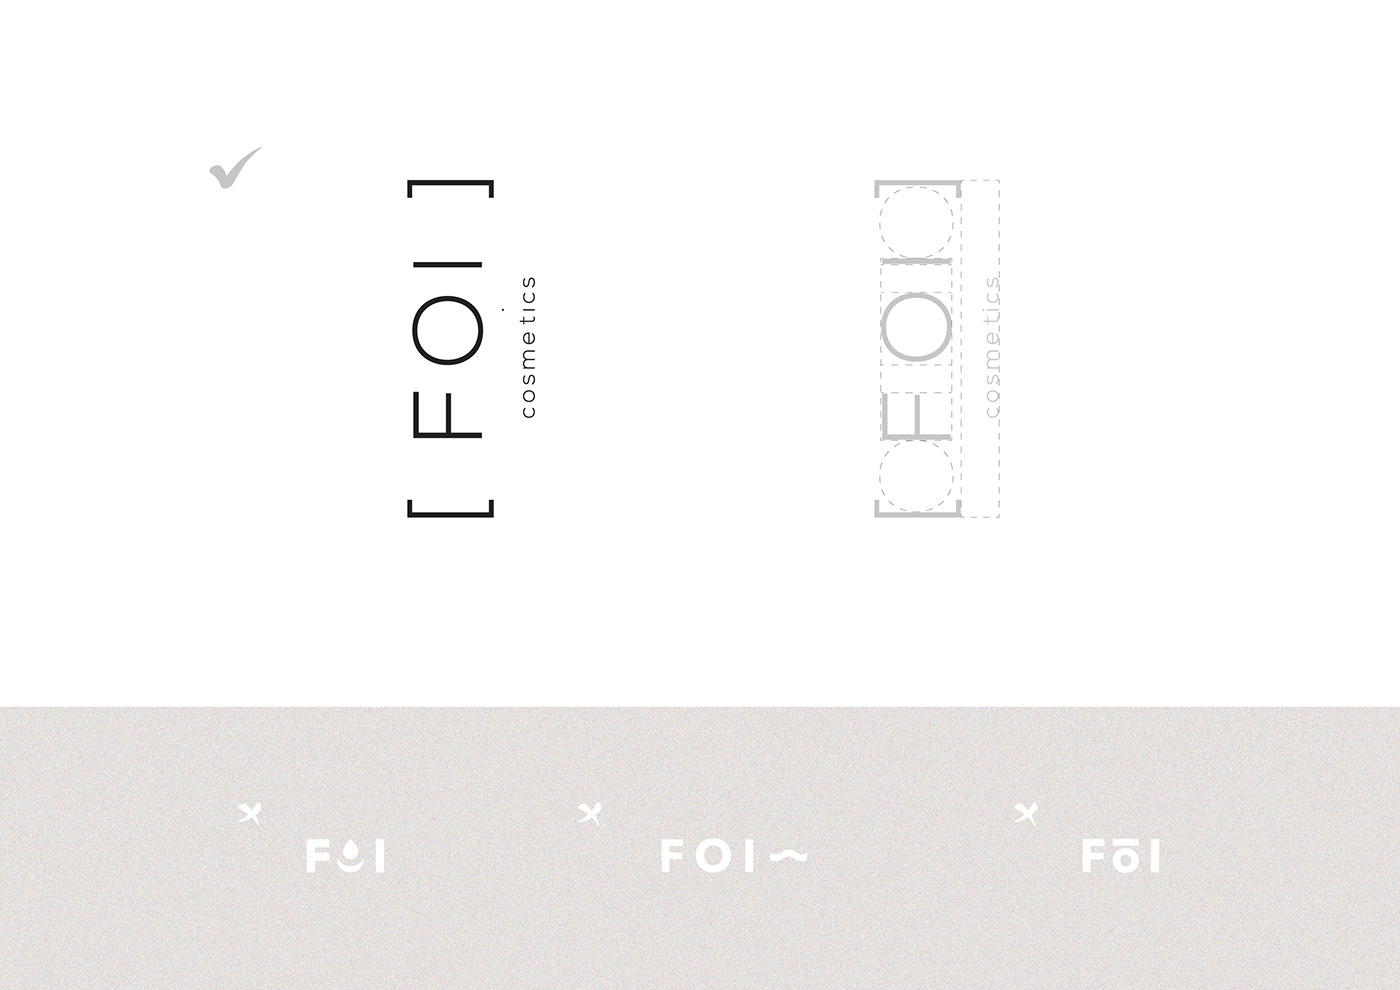 Logo Design for Cosmetics brand FOI